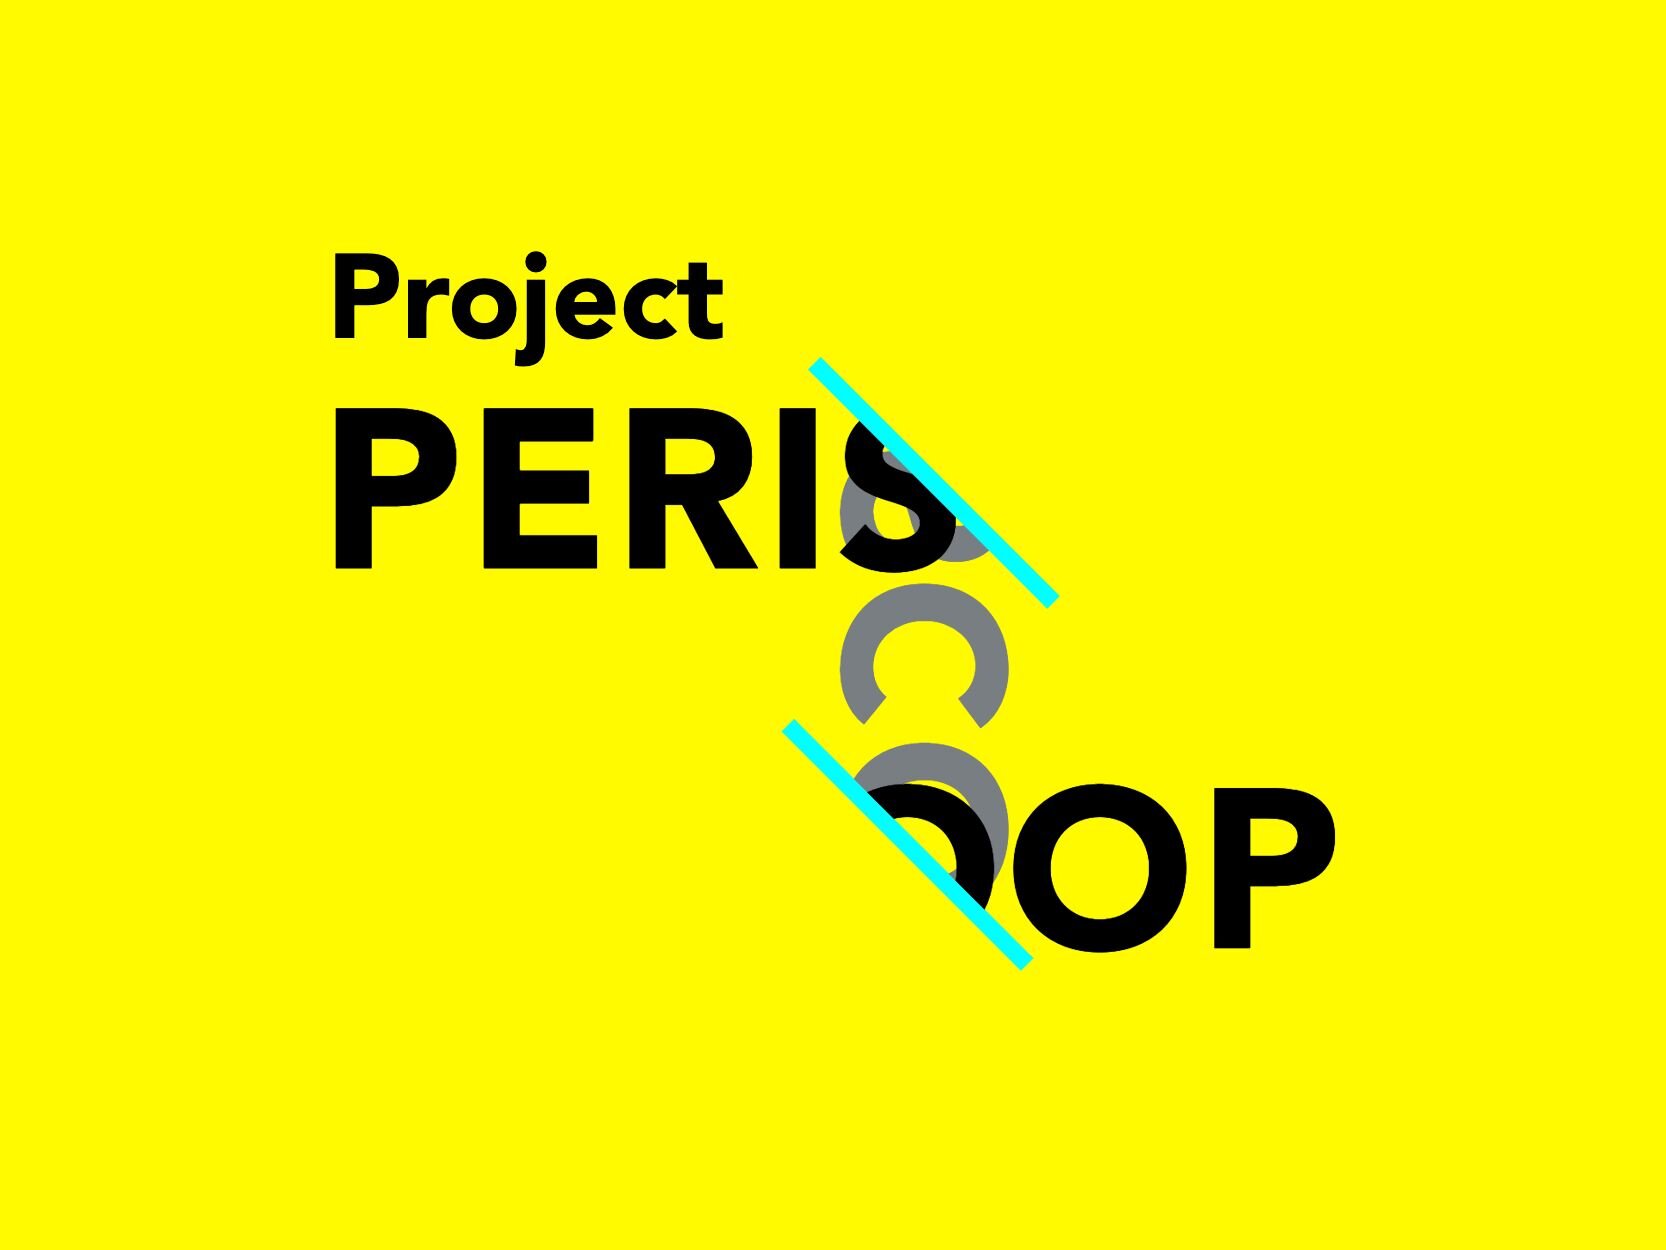 Project Periscoop_Maarten Slof-1.jpeg